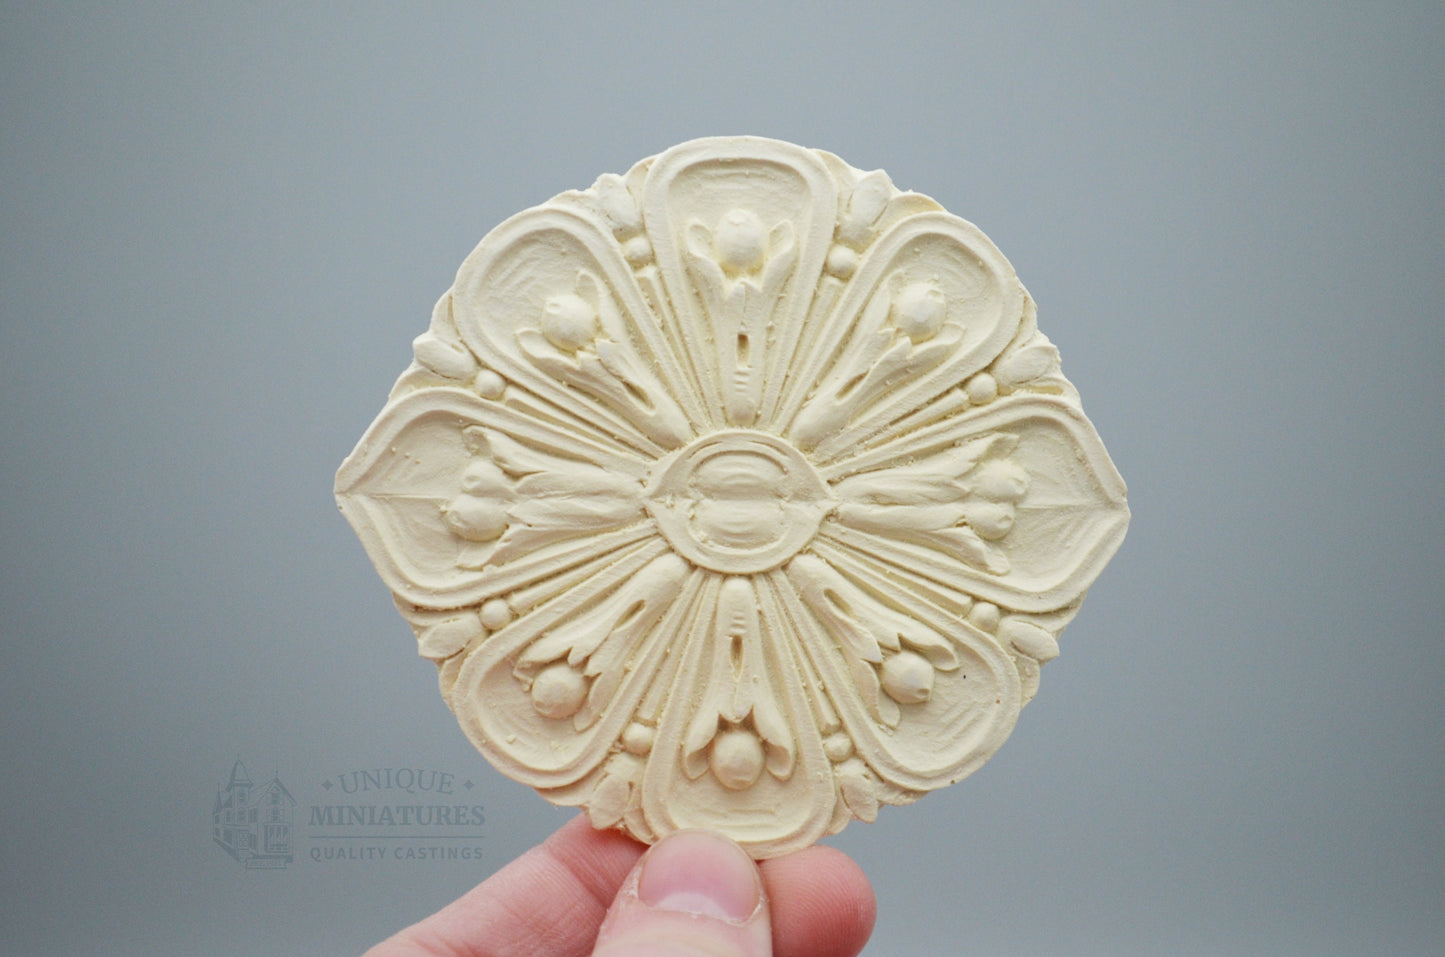 Tulip Medallion Ceiling Carving |  3" diameter  | Miniature Appliqué